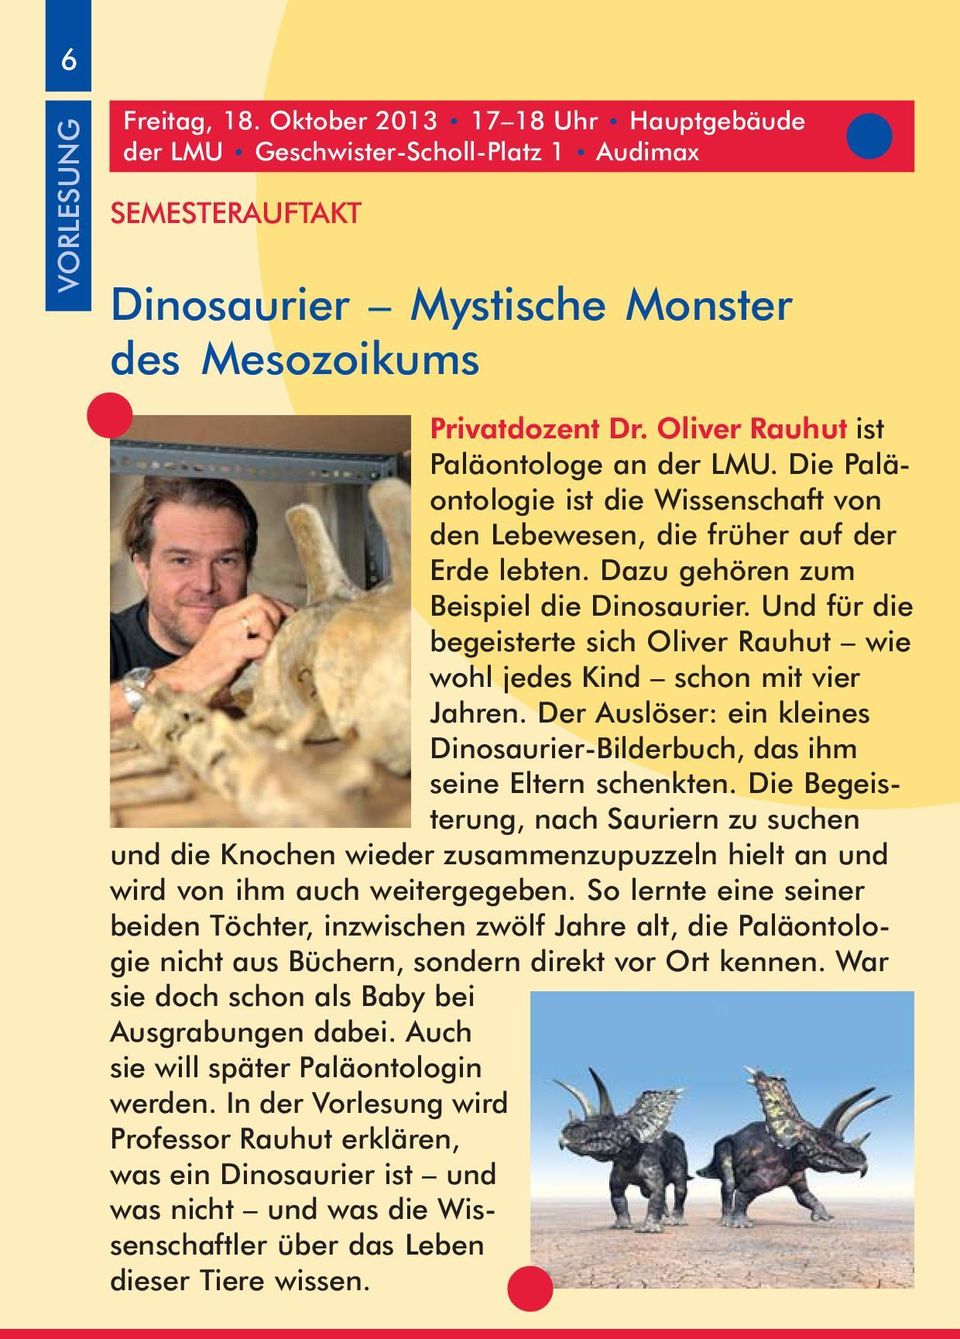 Und für die begeisterte sich Oliver Rauhut wie wohl jedes Kind schon mit vier Jahren. Der Auslöser: ein kleines Dinosaurier-Bilderbuch, das ihm seine Eltern schenkten.